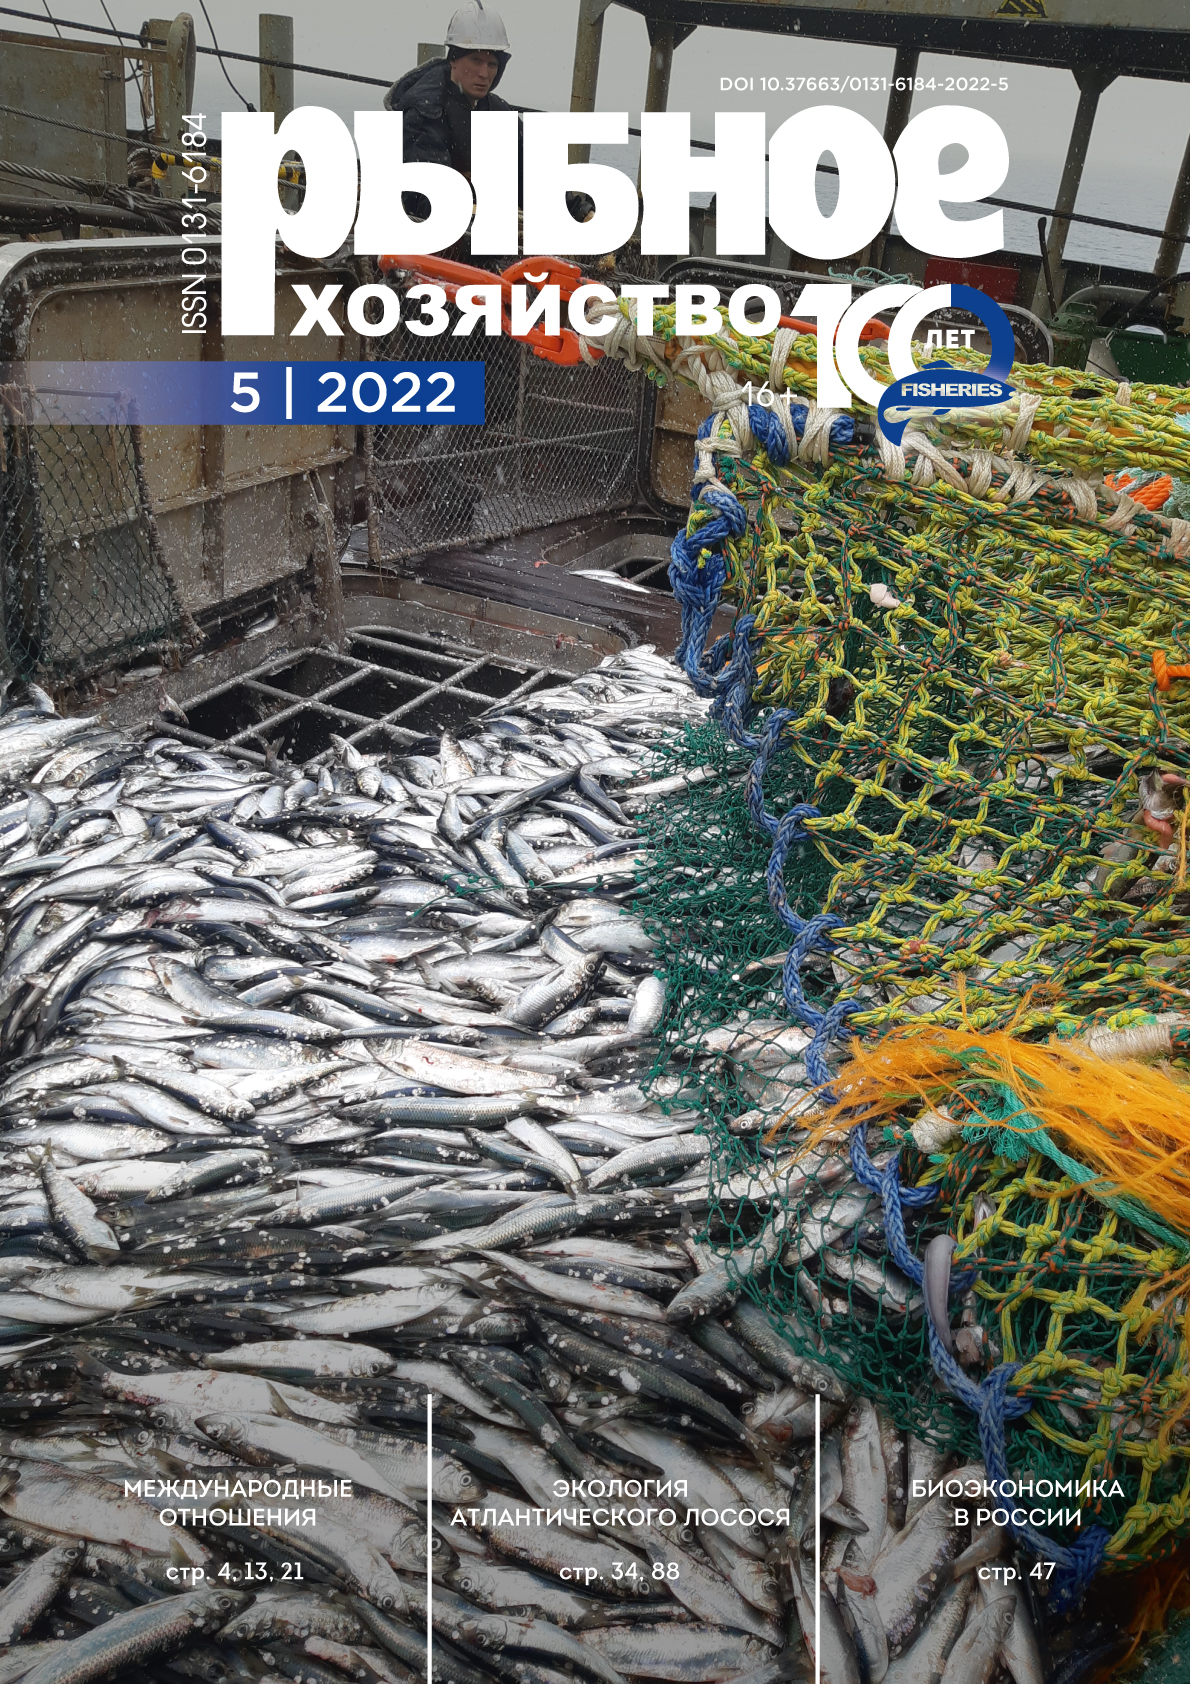             Рыбоходно-нерестовые каналы, как средство улучшения условий воспроизводства рыб на Нижнем Дону
    